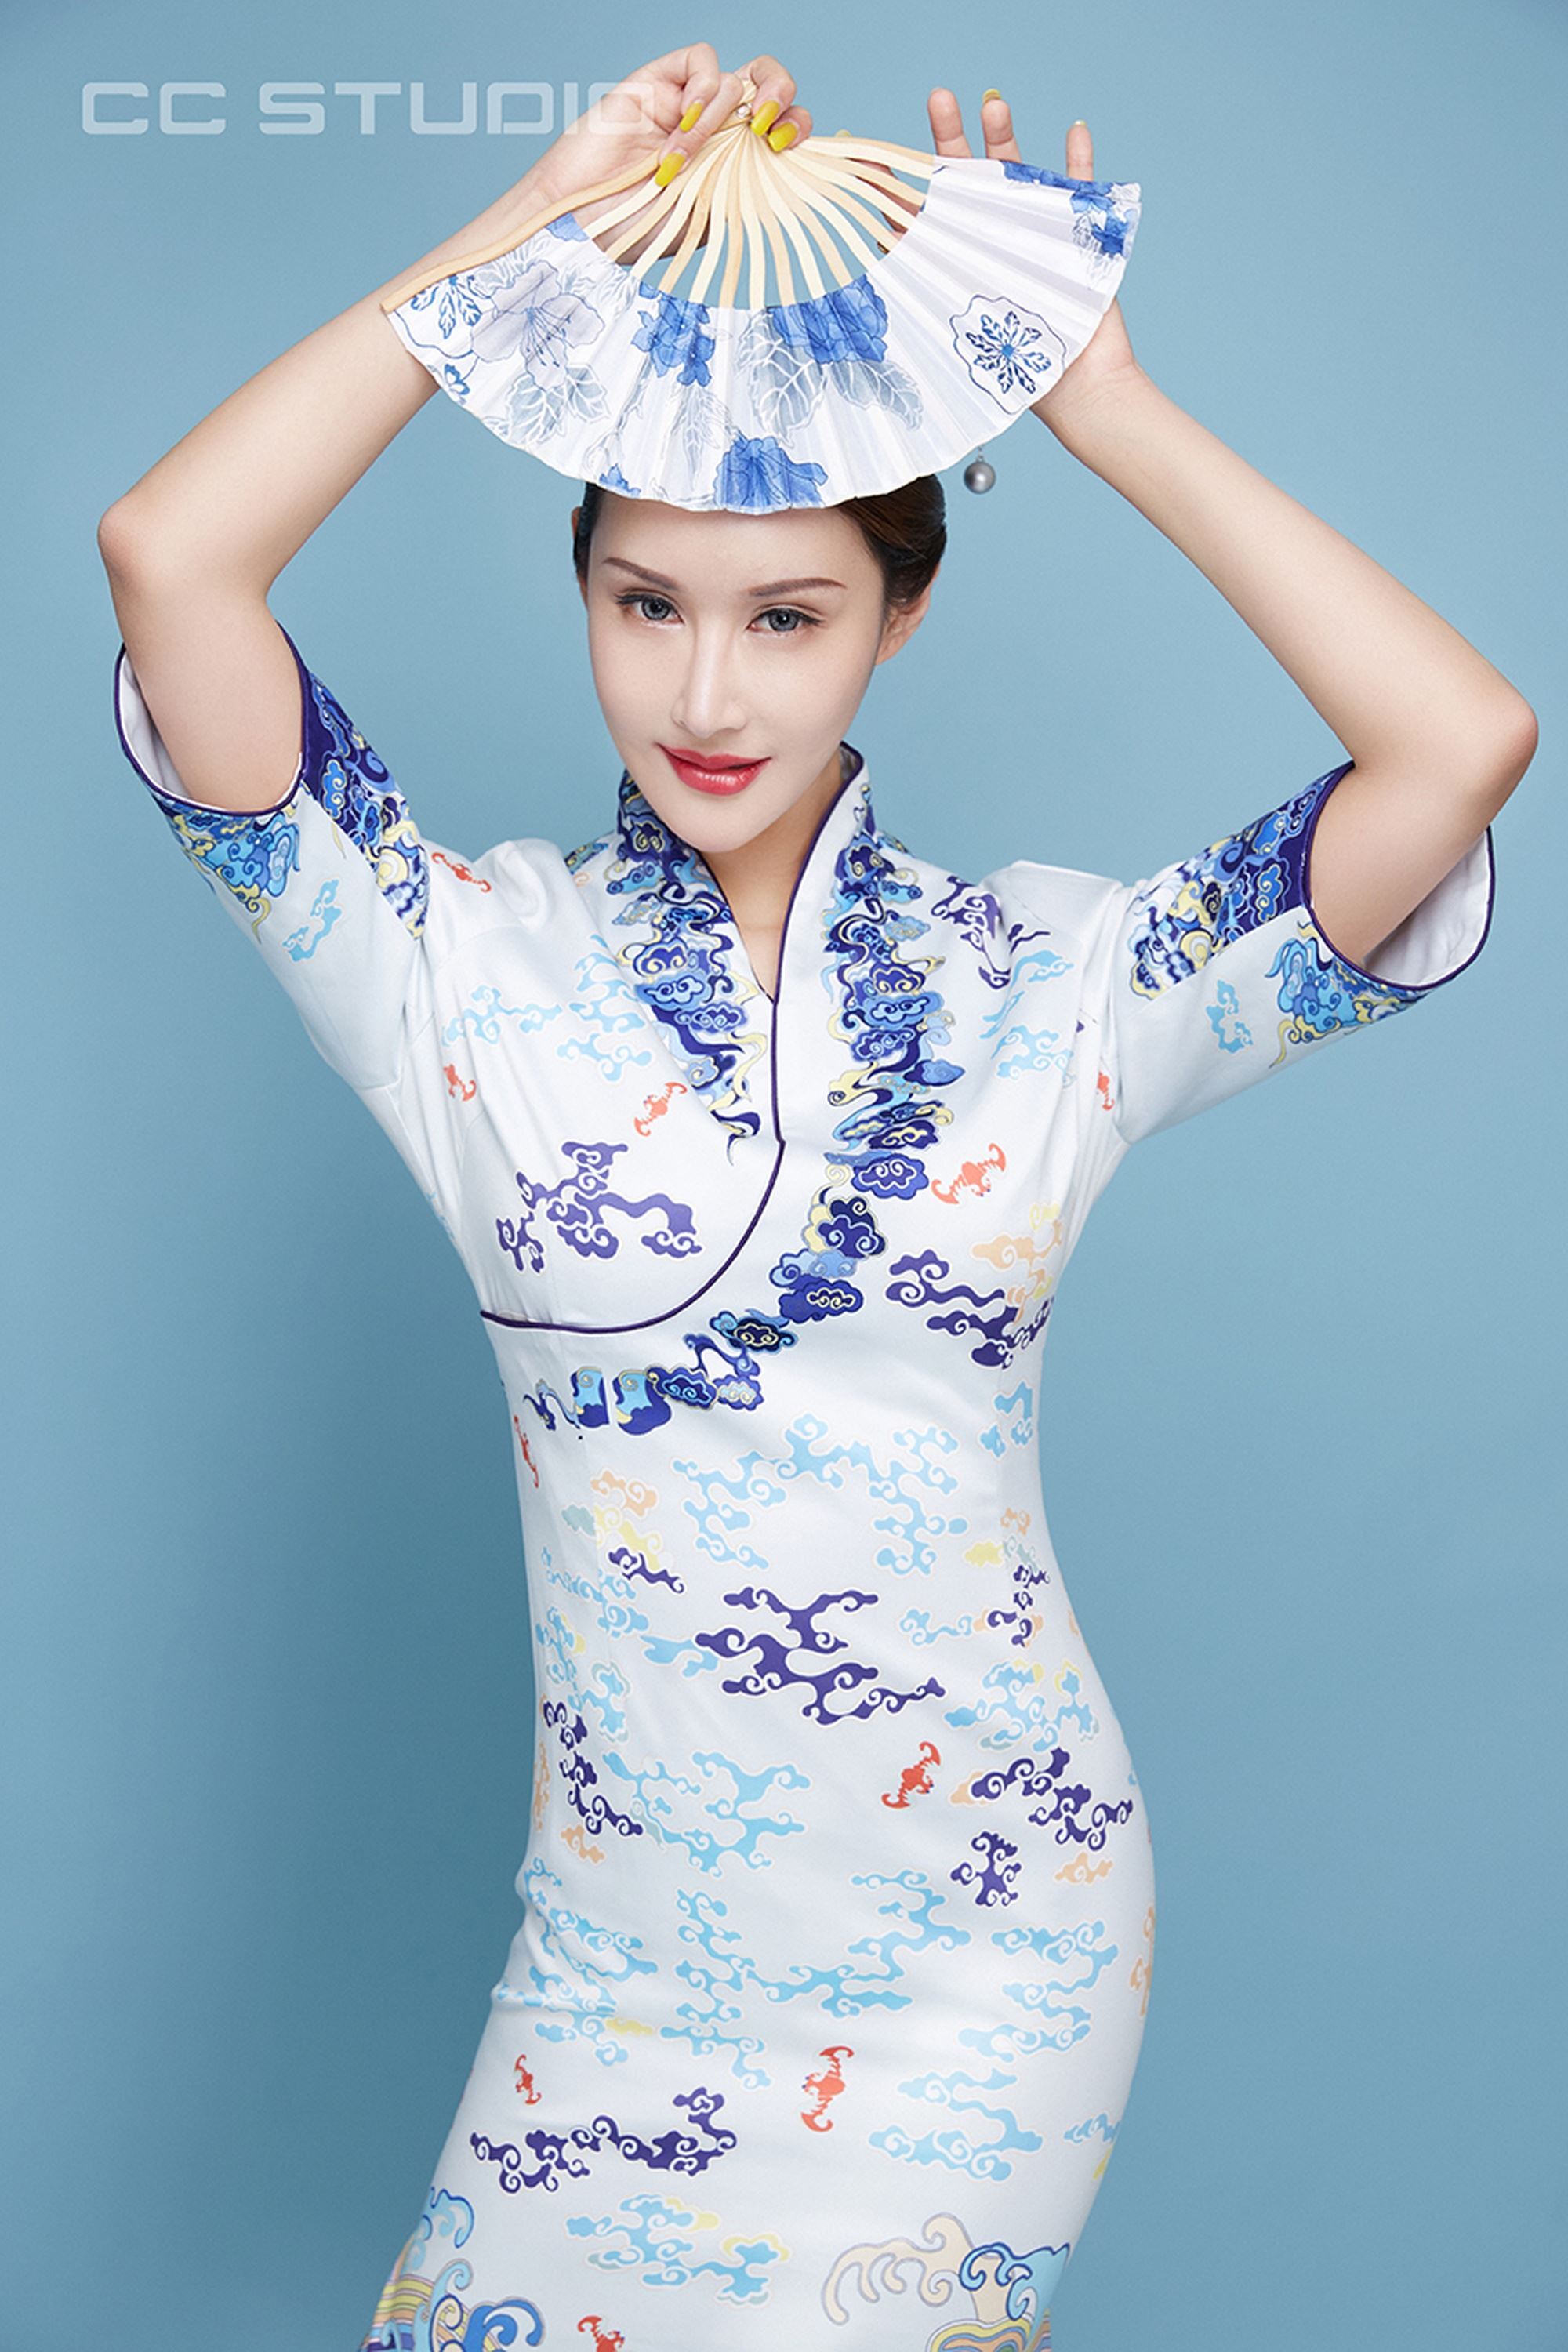 [TouTiao头条女神] 2019.05.12 曼苏拉娜 小时候的梦想是做一名空姐